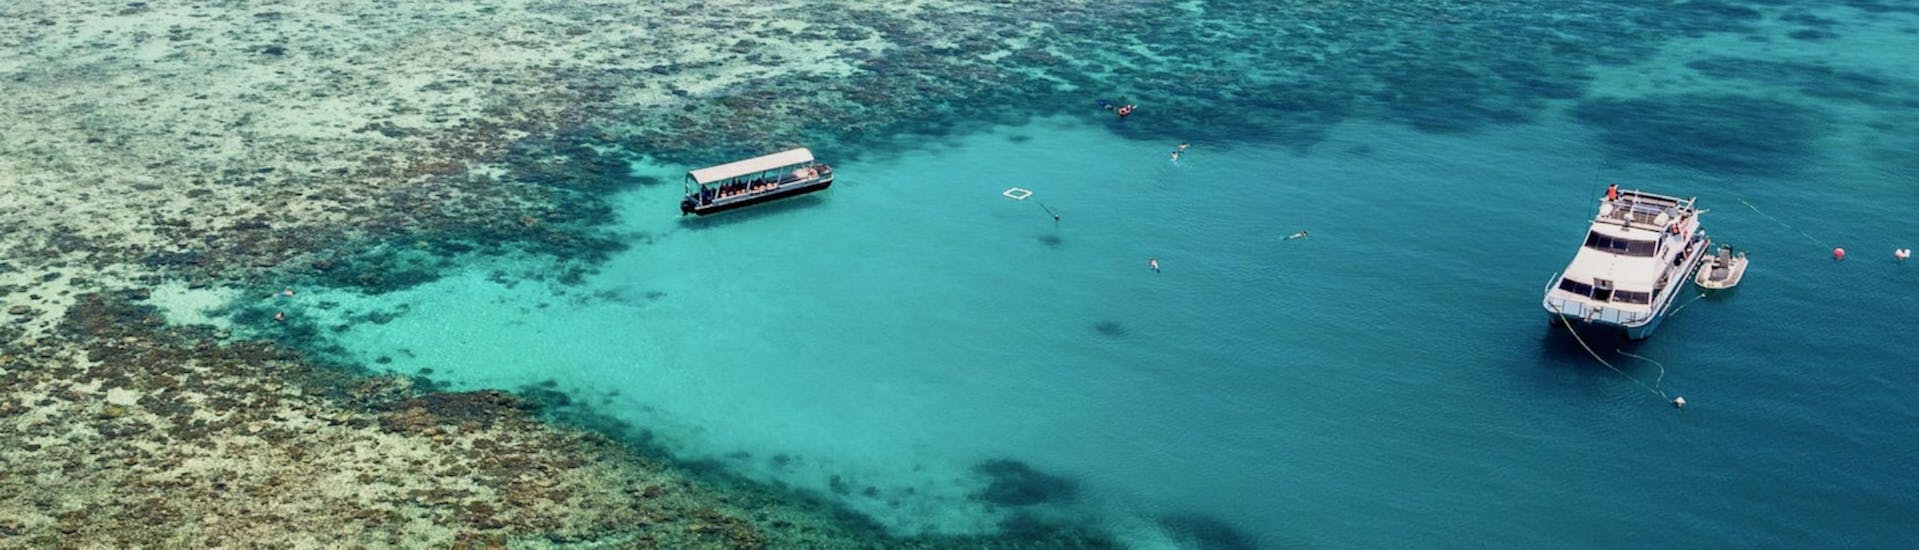 Paseo en barco a Great Barrier Reef con baño en el mar & avistamiento de fauna.